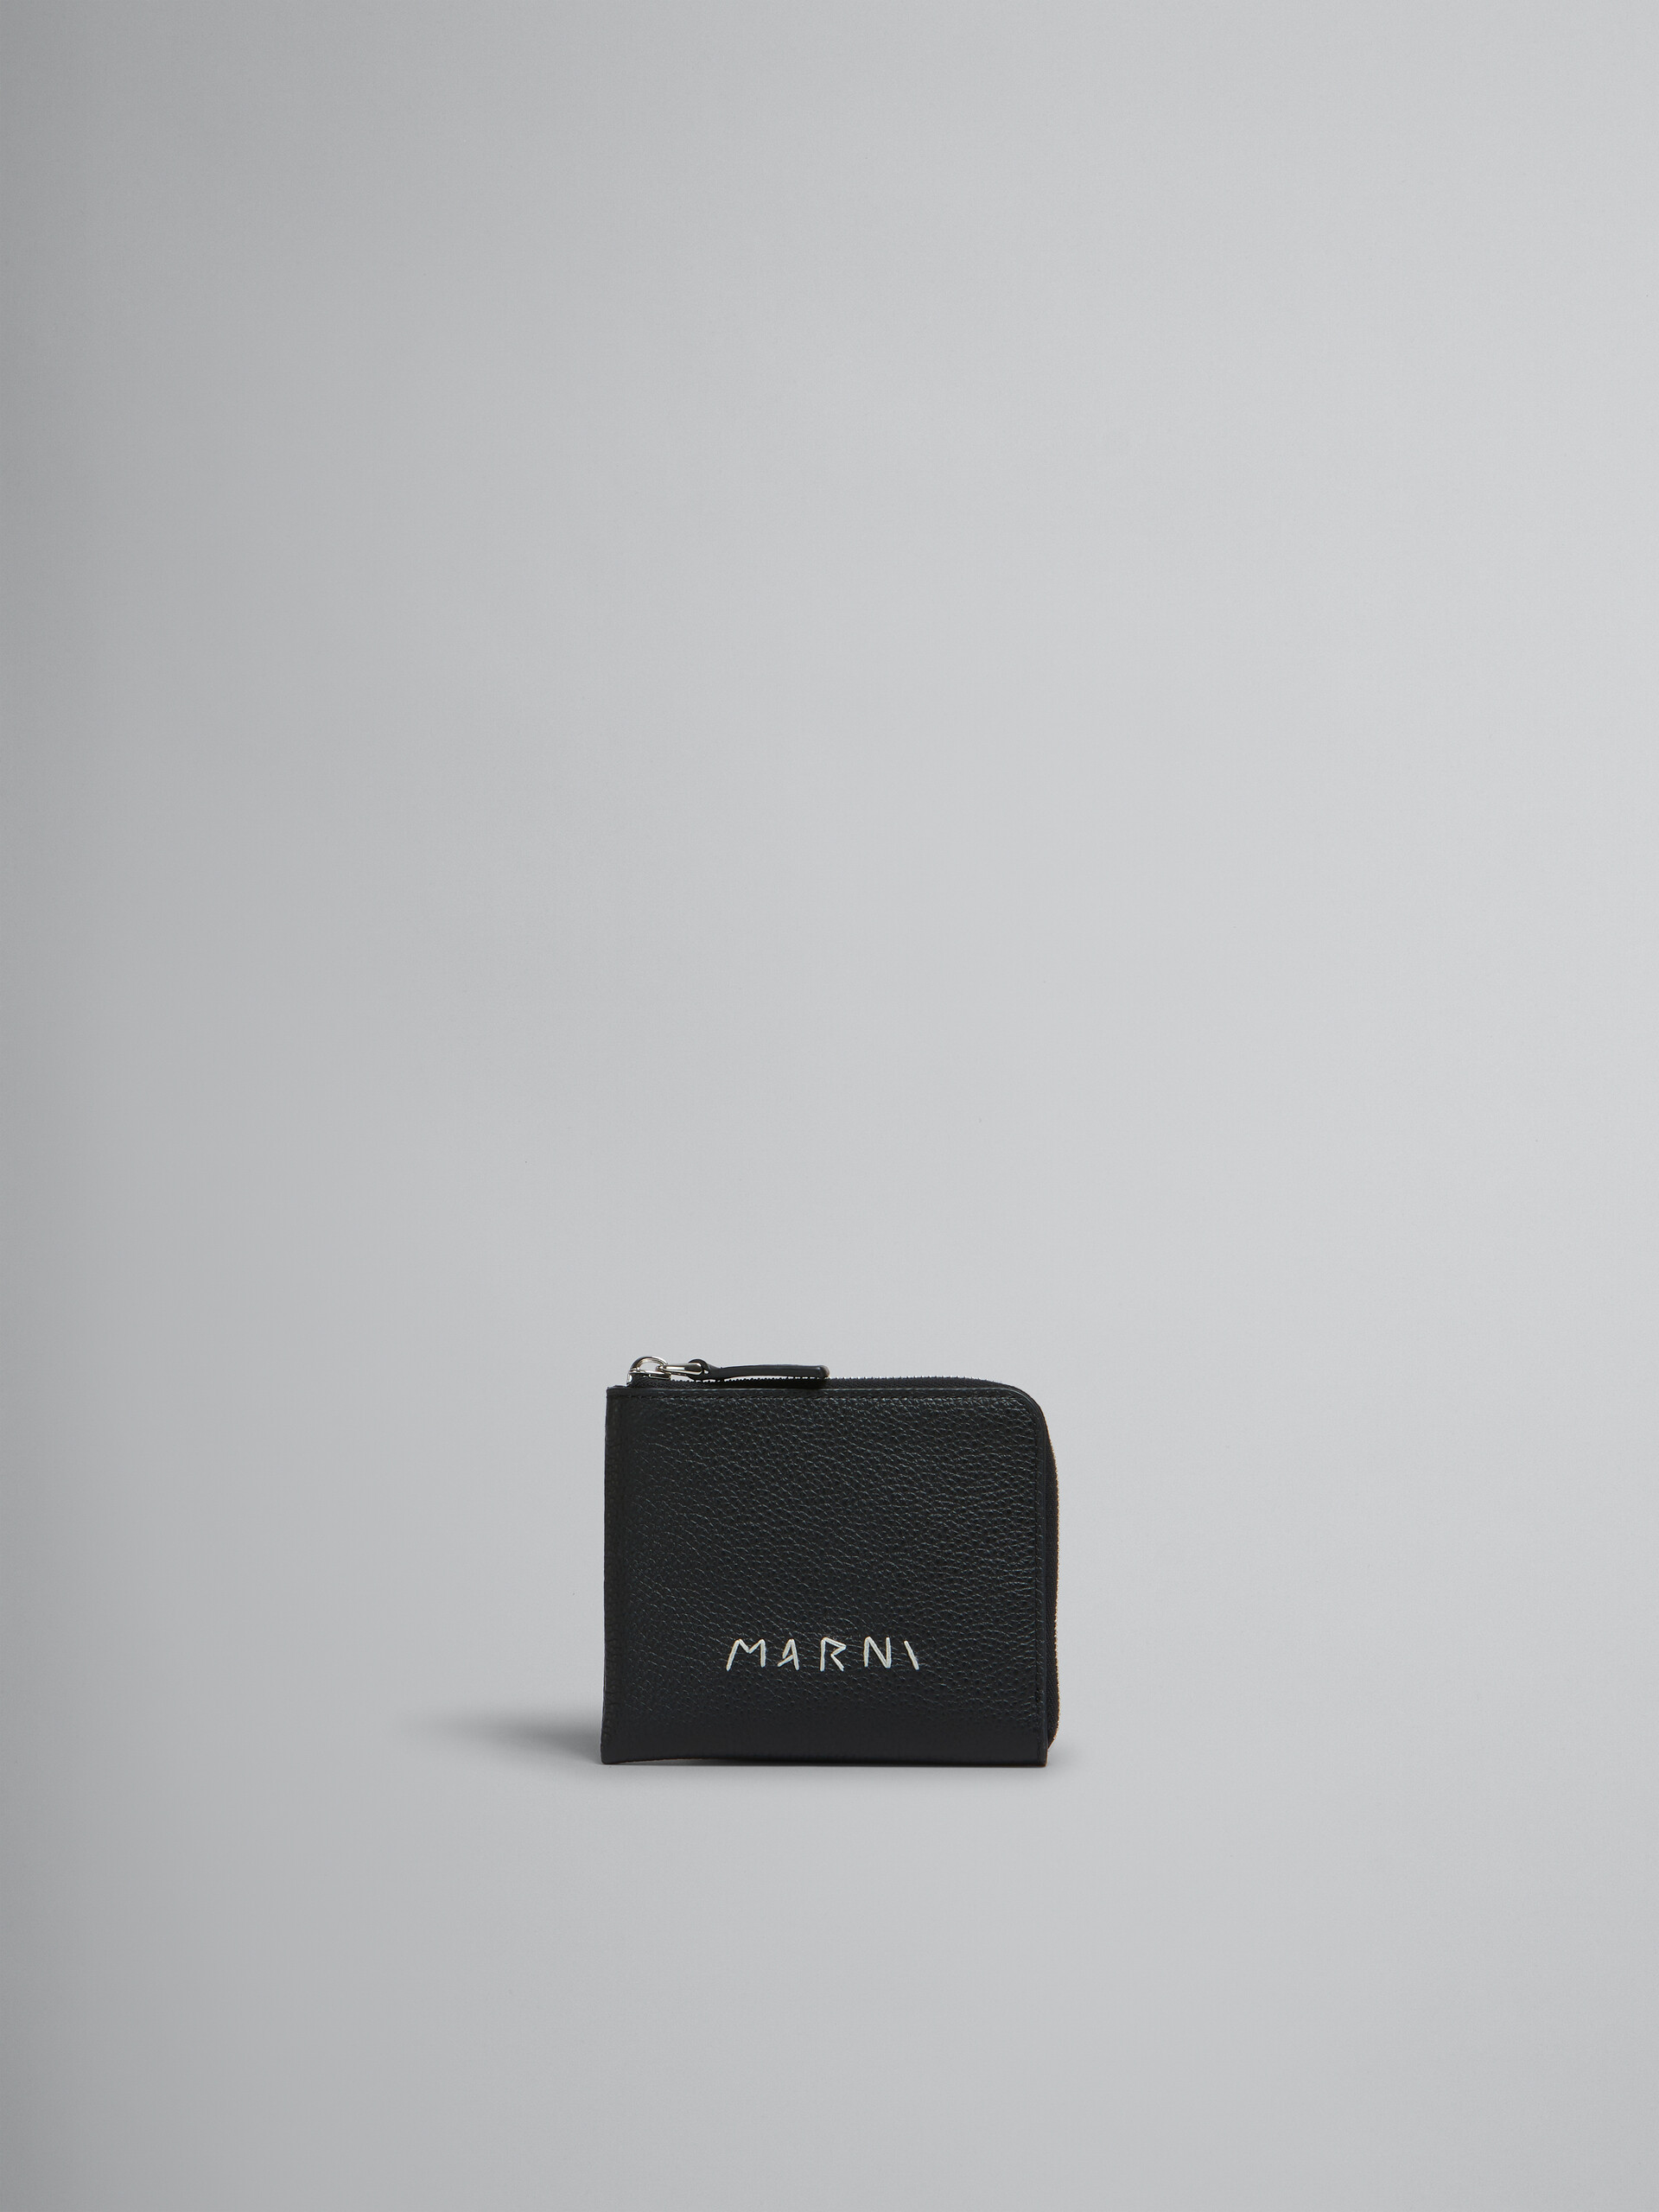 마르니 멘딩 장식 블랙 가죽 집어라운드 지갑 - 지갑 - Image 1